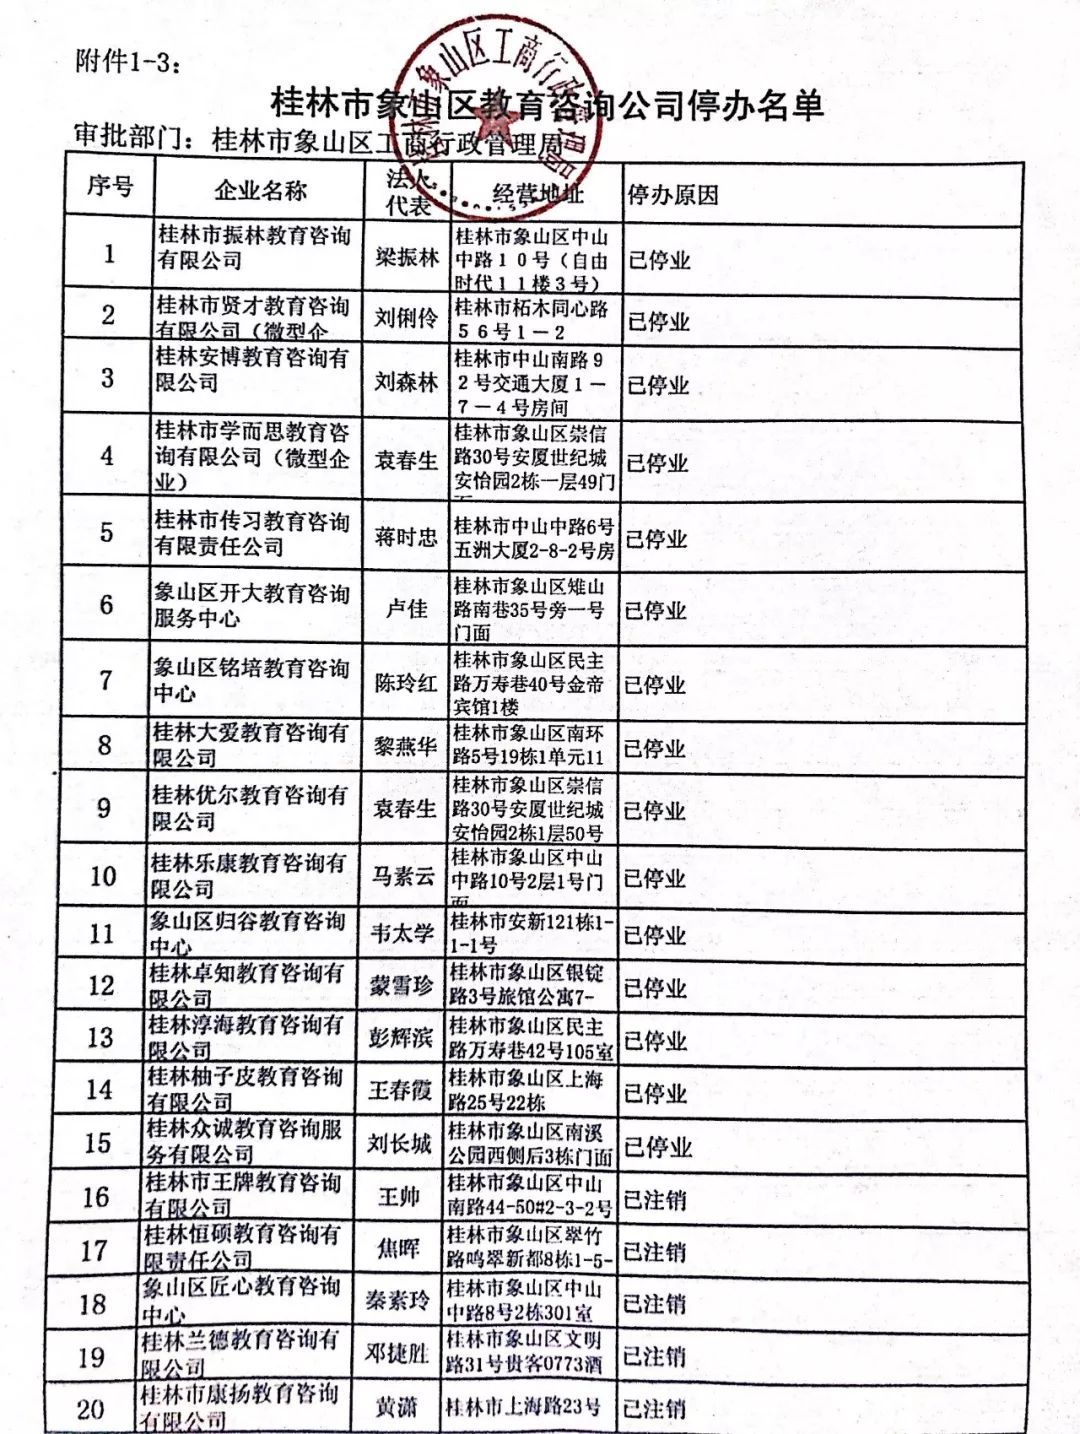 扩散!桂林教育局刚公布的培训机构黑名单,有你